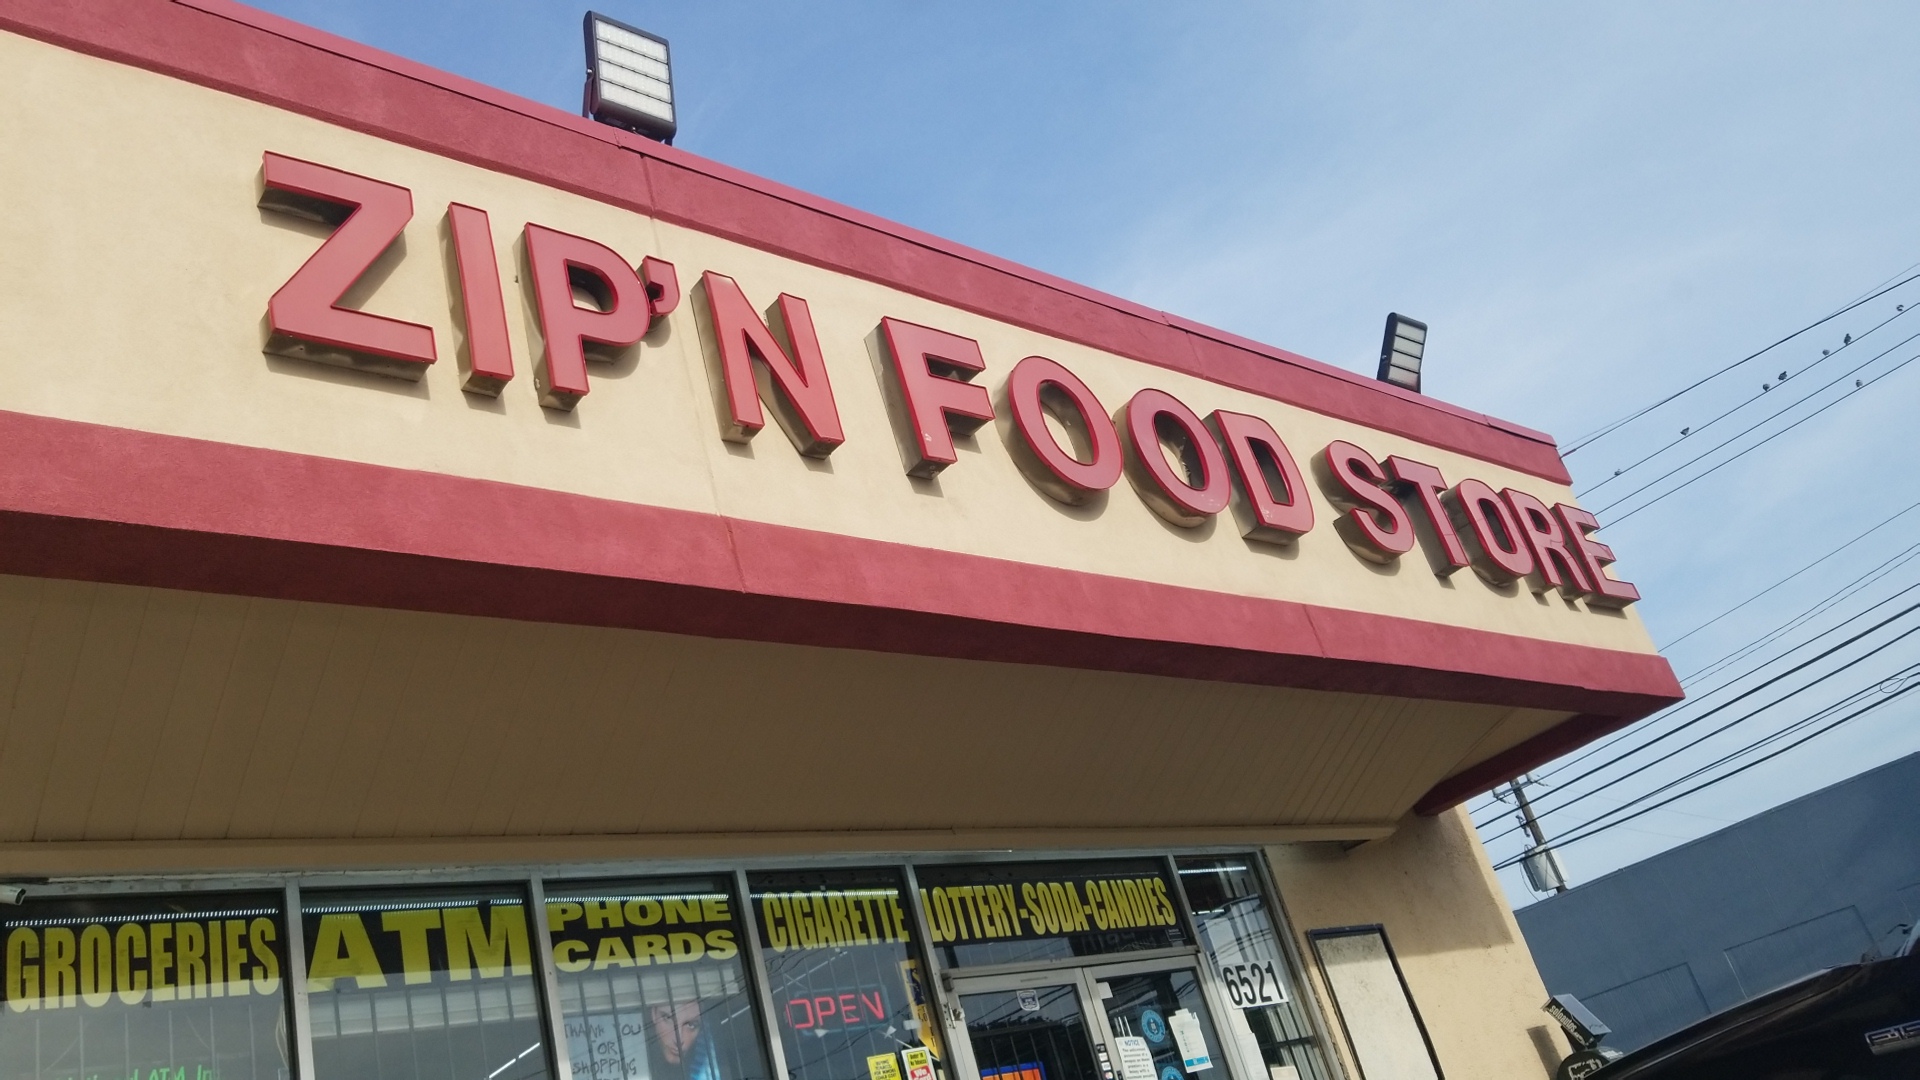 Zip'n Food Store